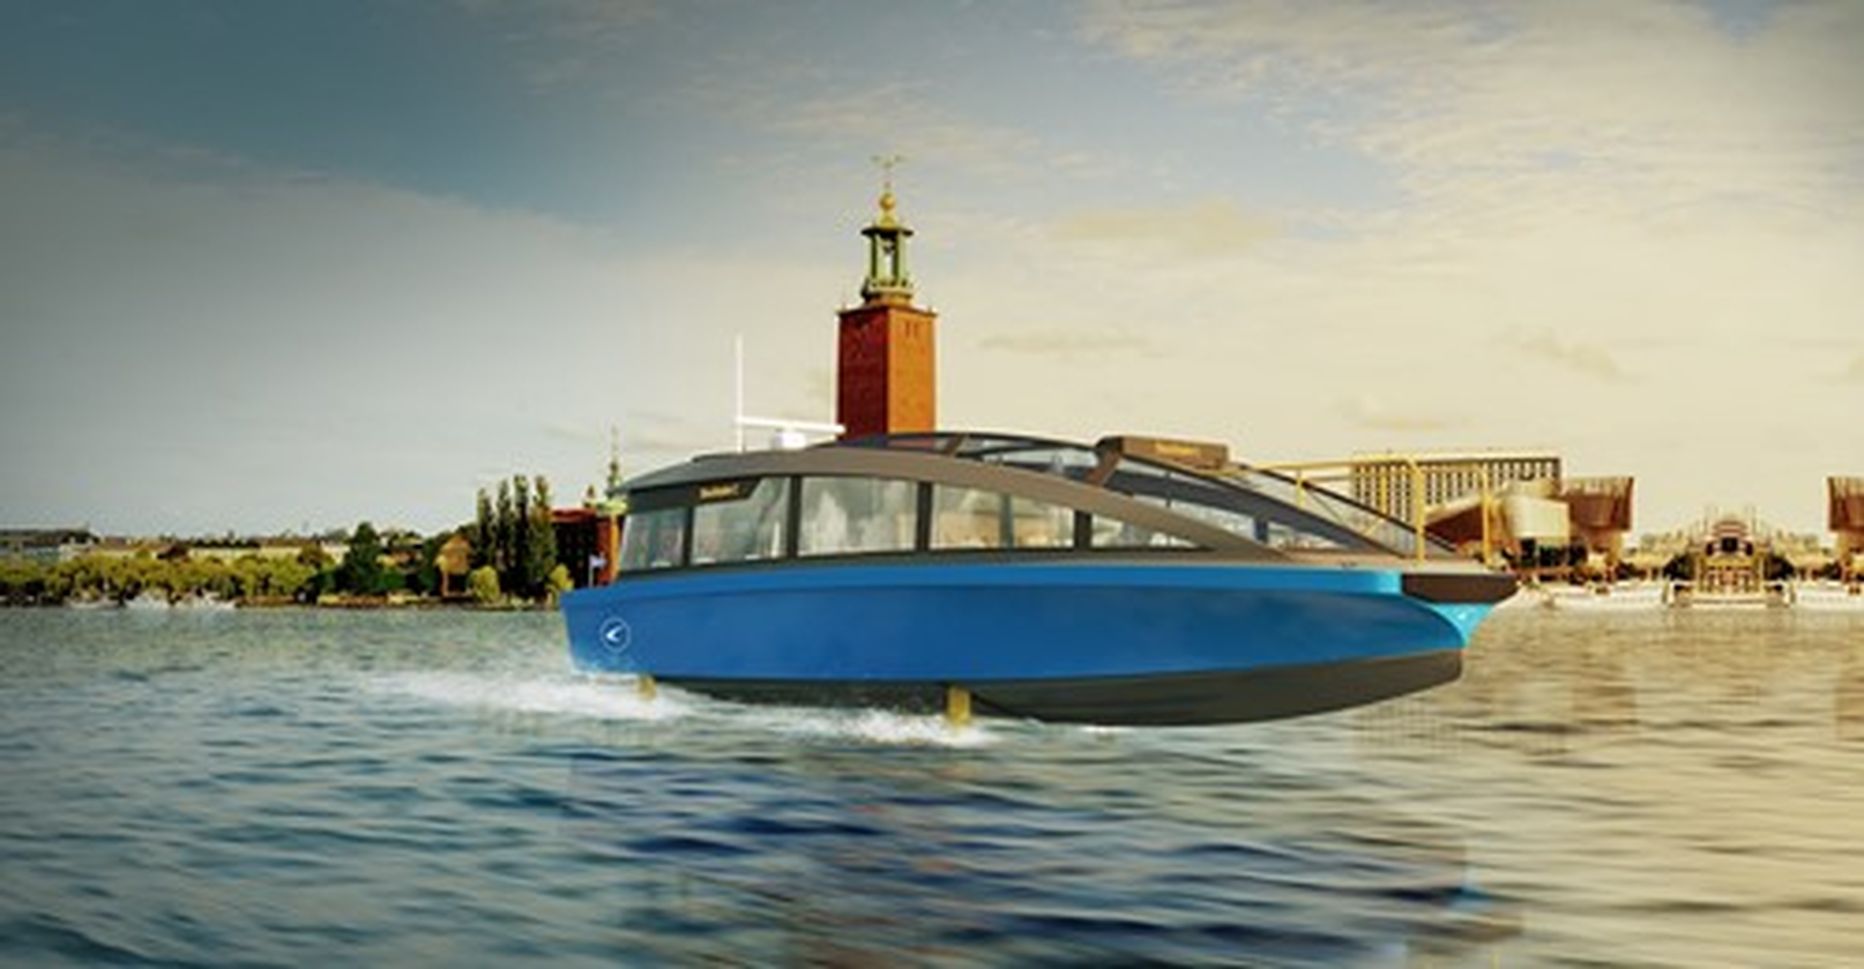 Candela veealustel tiibadel elektriline väikereisilaev alustab Stockholmi lähilaevaliinide teenindamist 2022. aastal